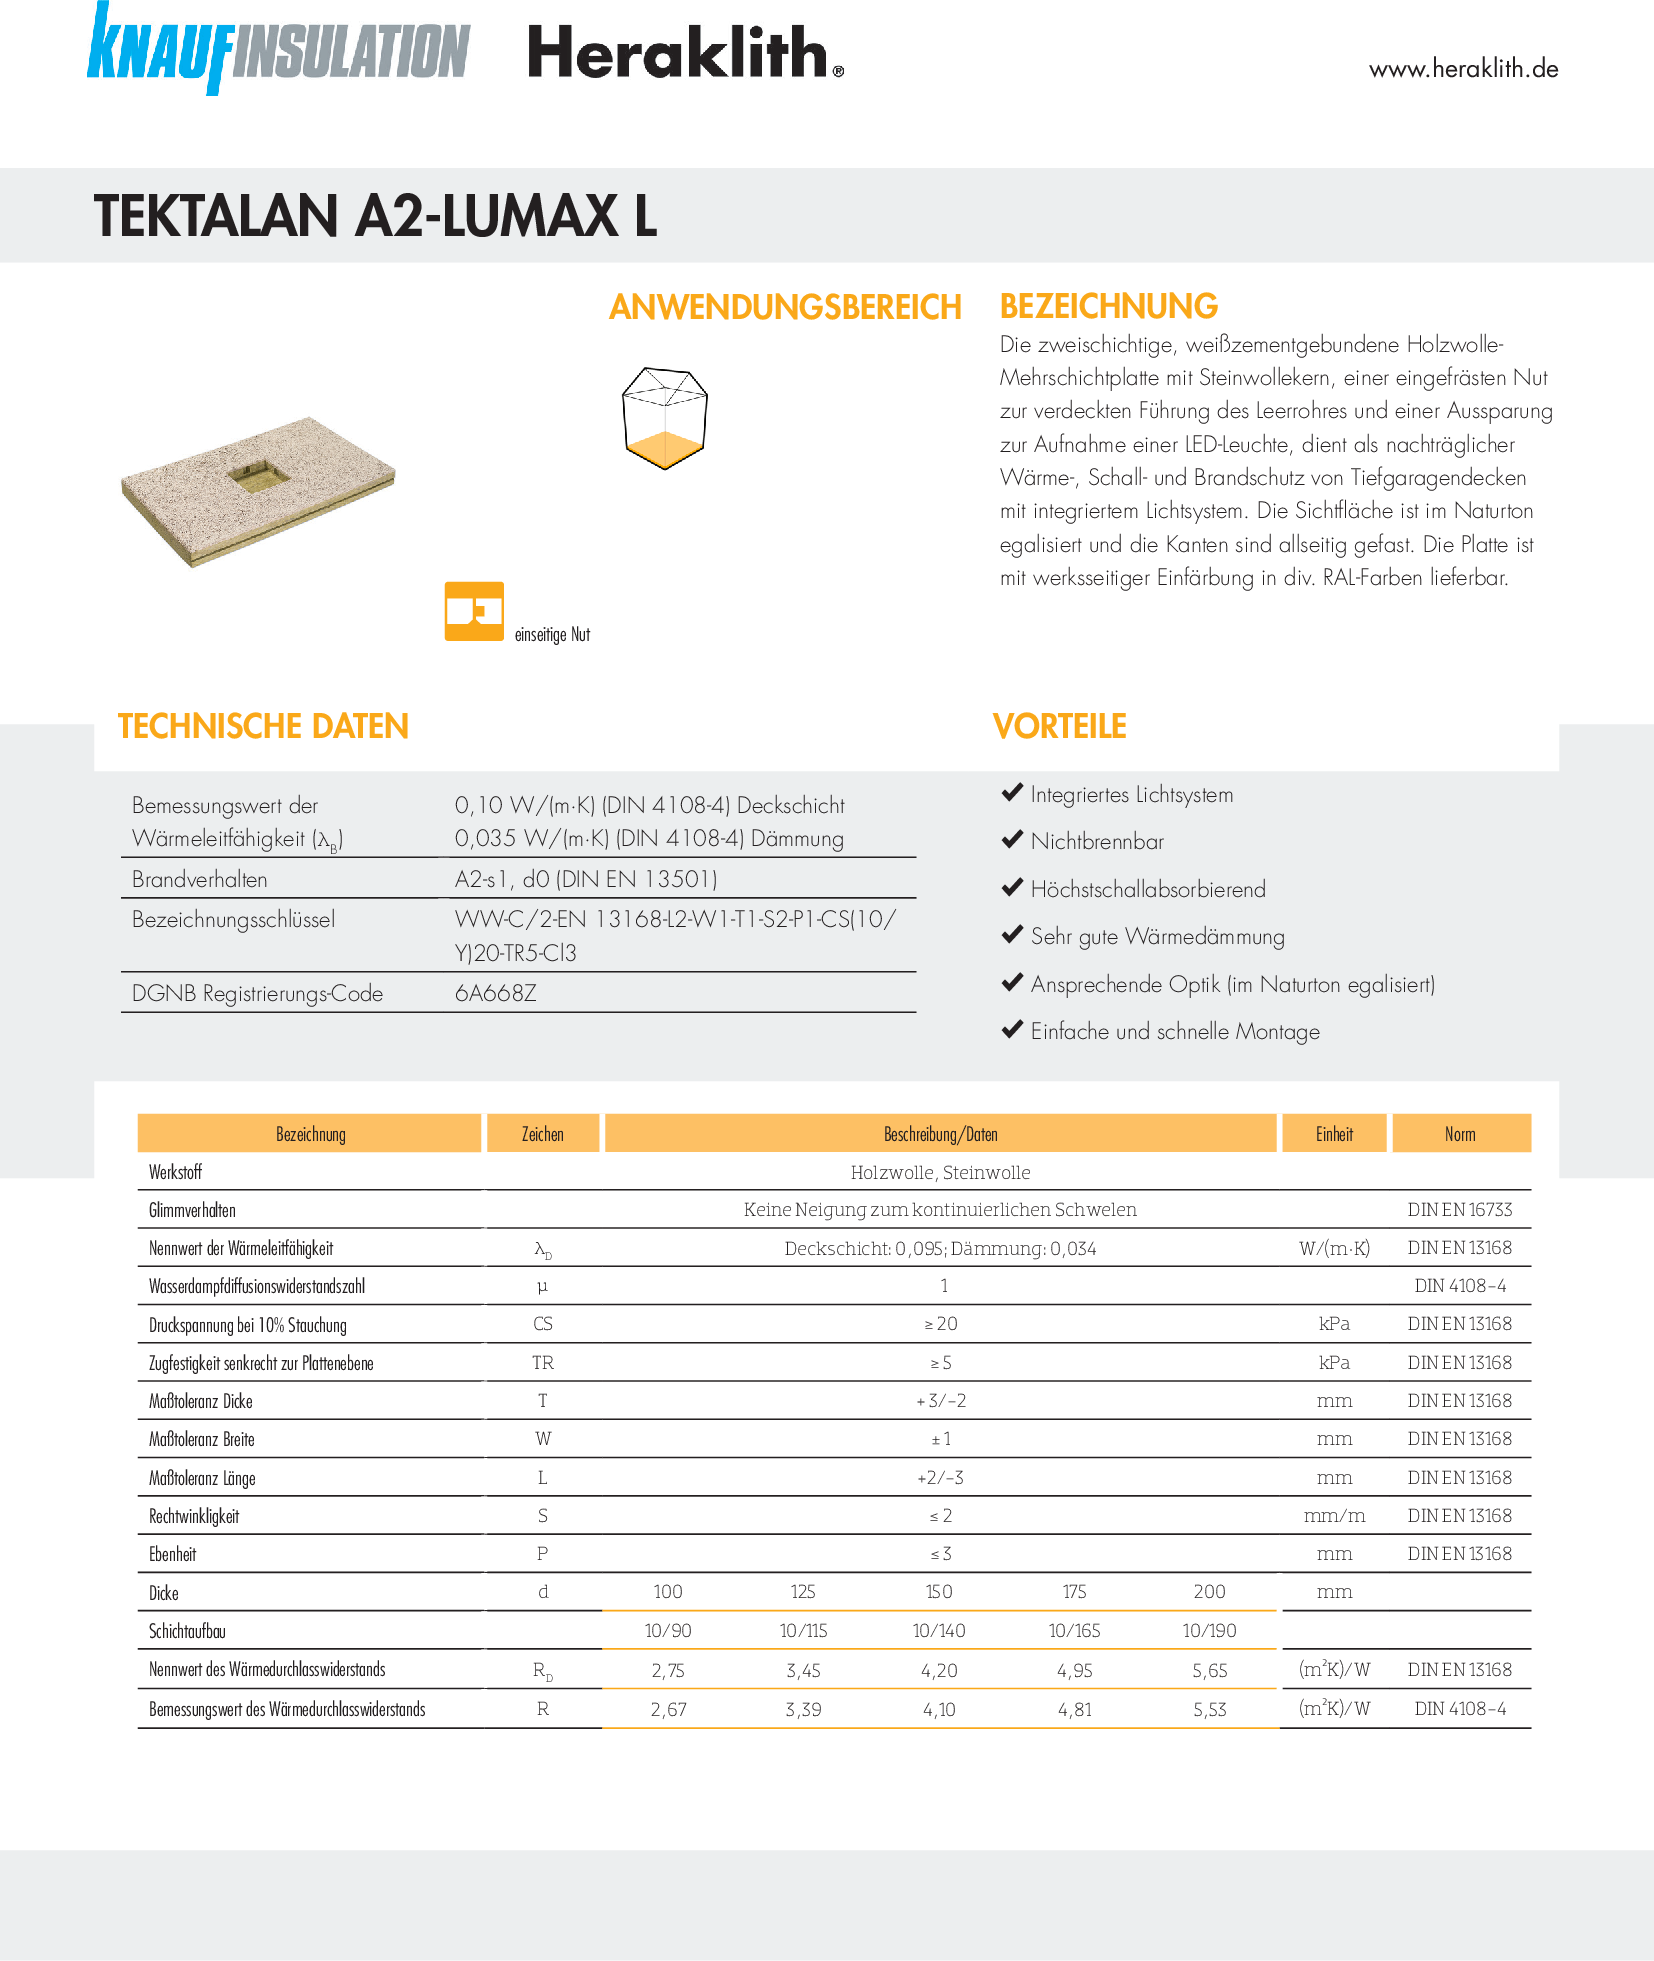 Datenblatt Tektalan A2-Lumax L